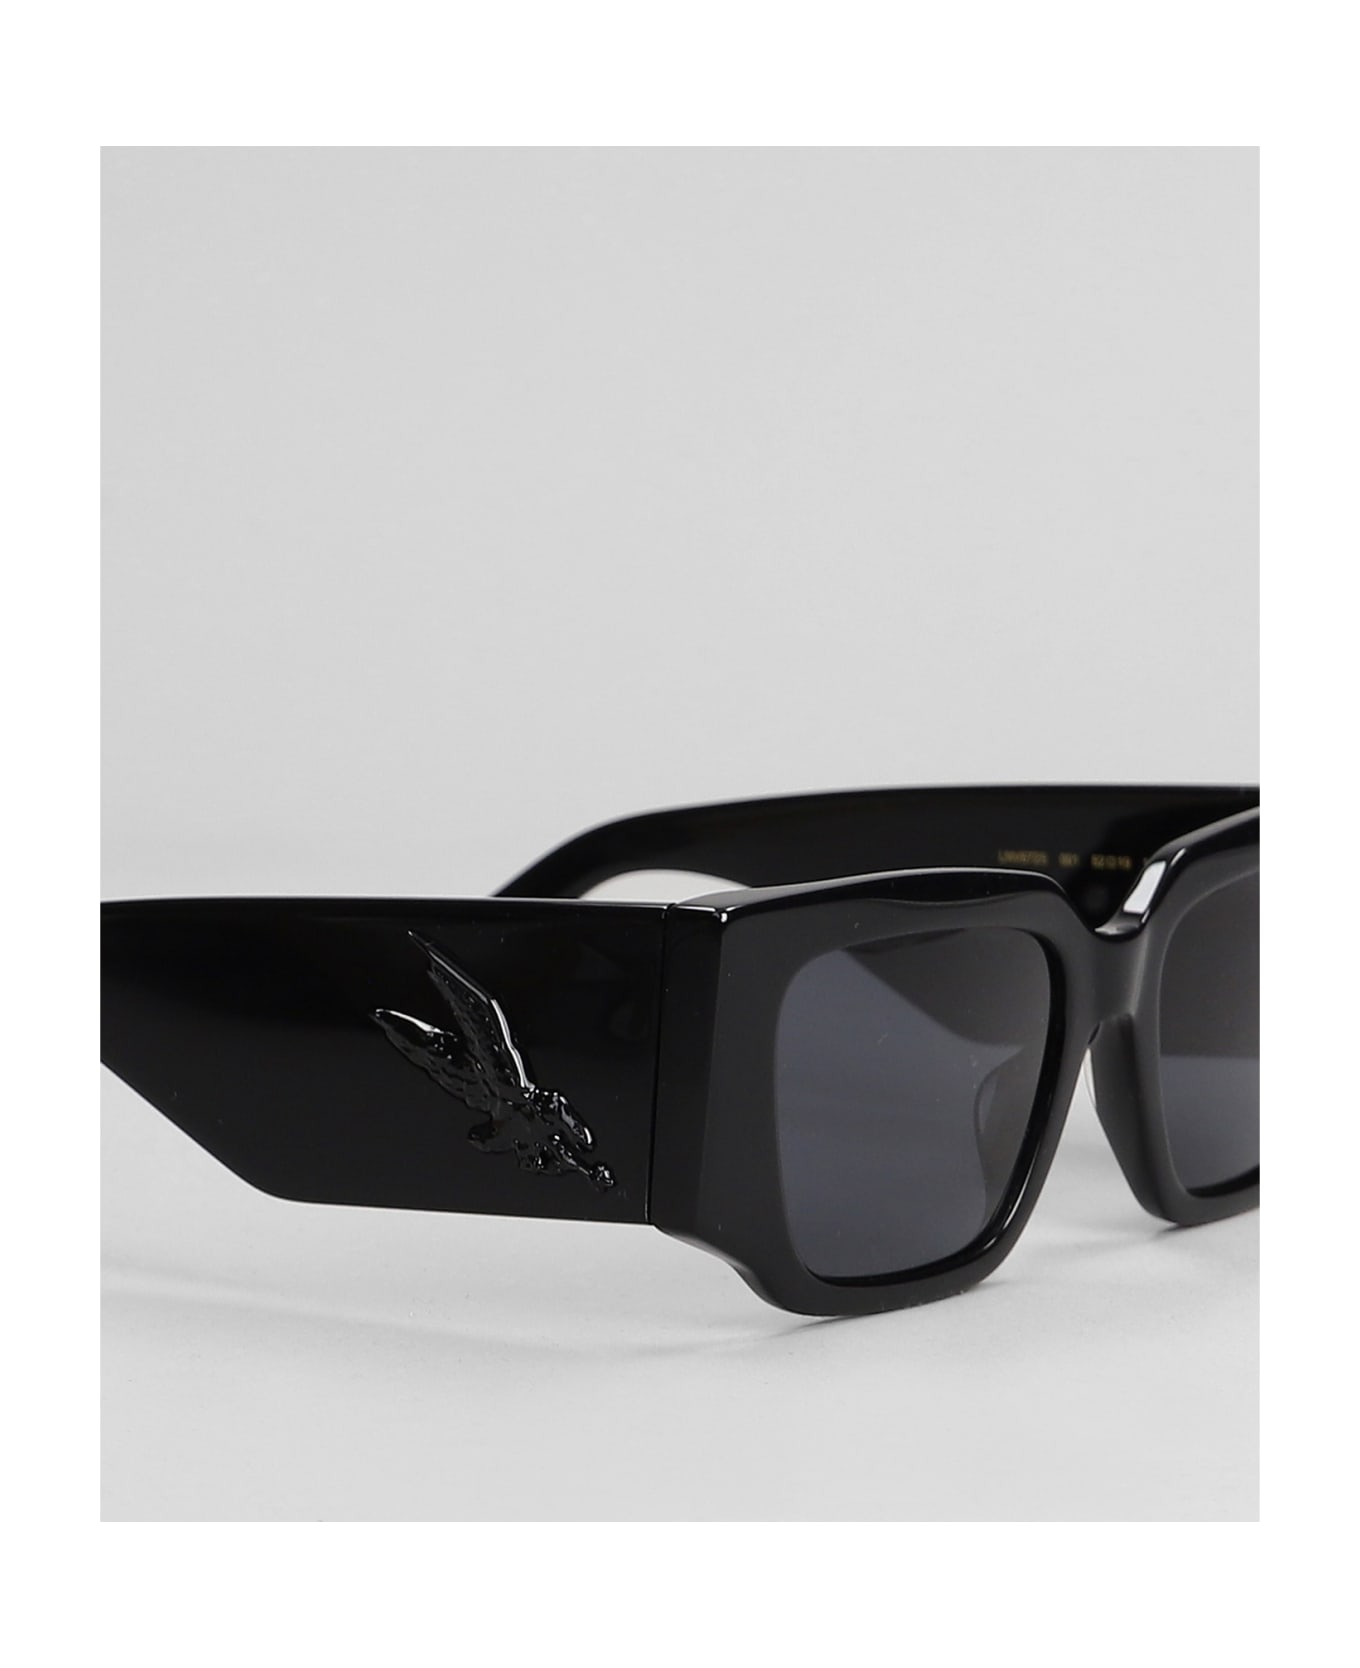 Lanvin Sunglasses In Black Acetate - black